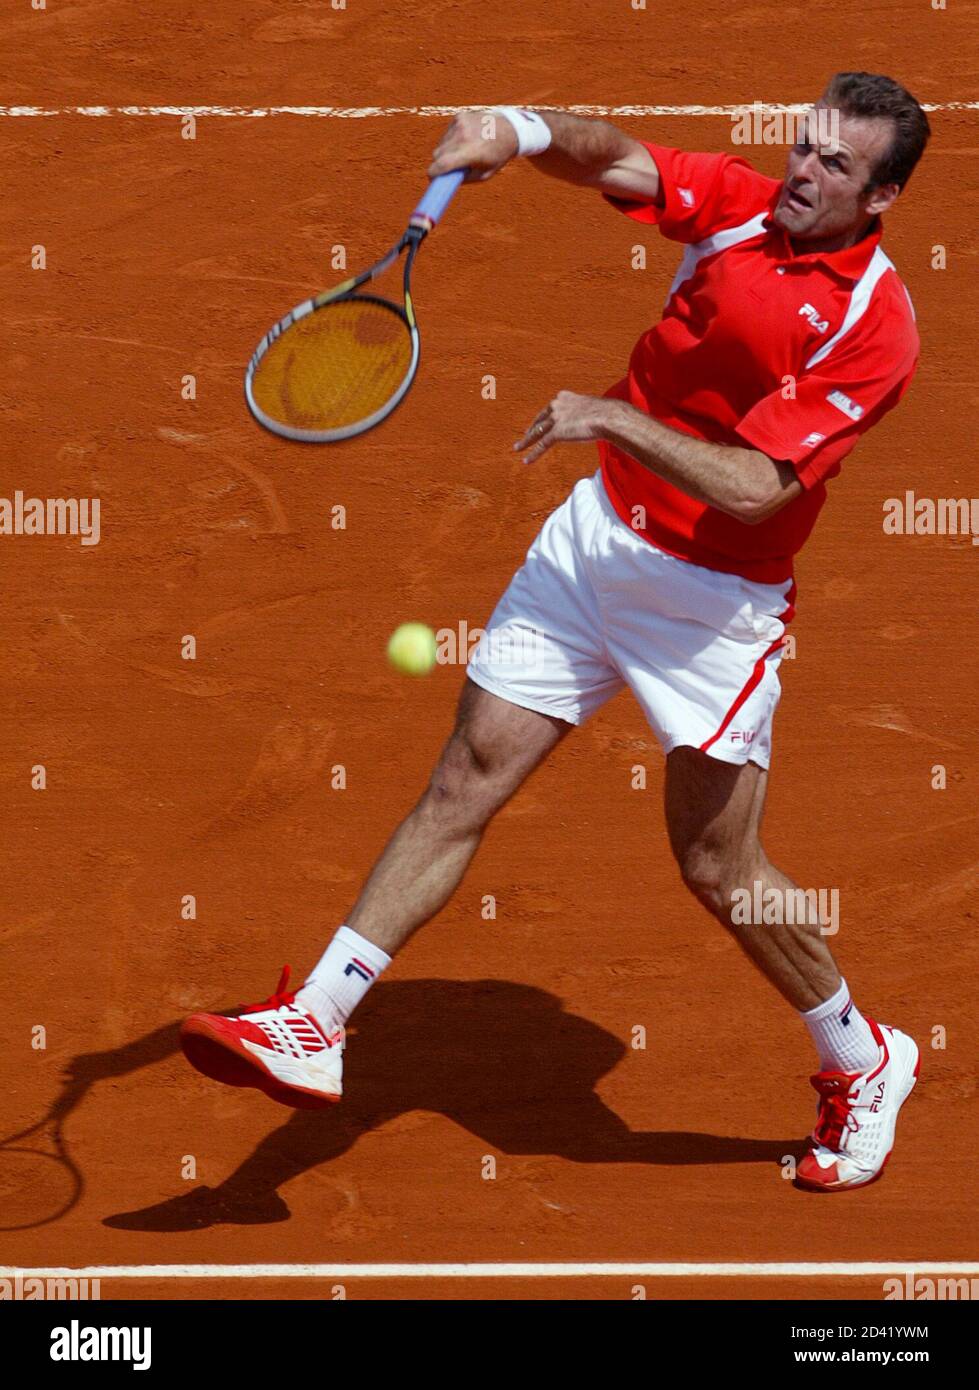 Anthony Dupuis, de France, perd son équilibre lors de son match contre  Younes El Aynaoui, du Maroc, lors de la première partie de l'ouverture du  tennis français au stade Roland Garros, le